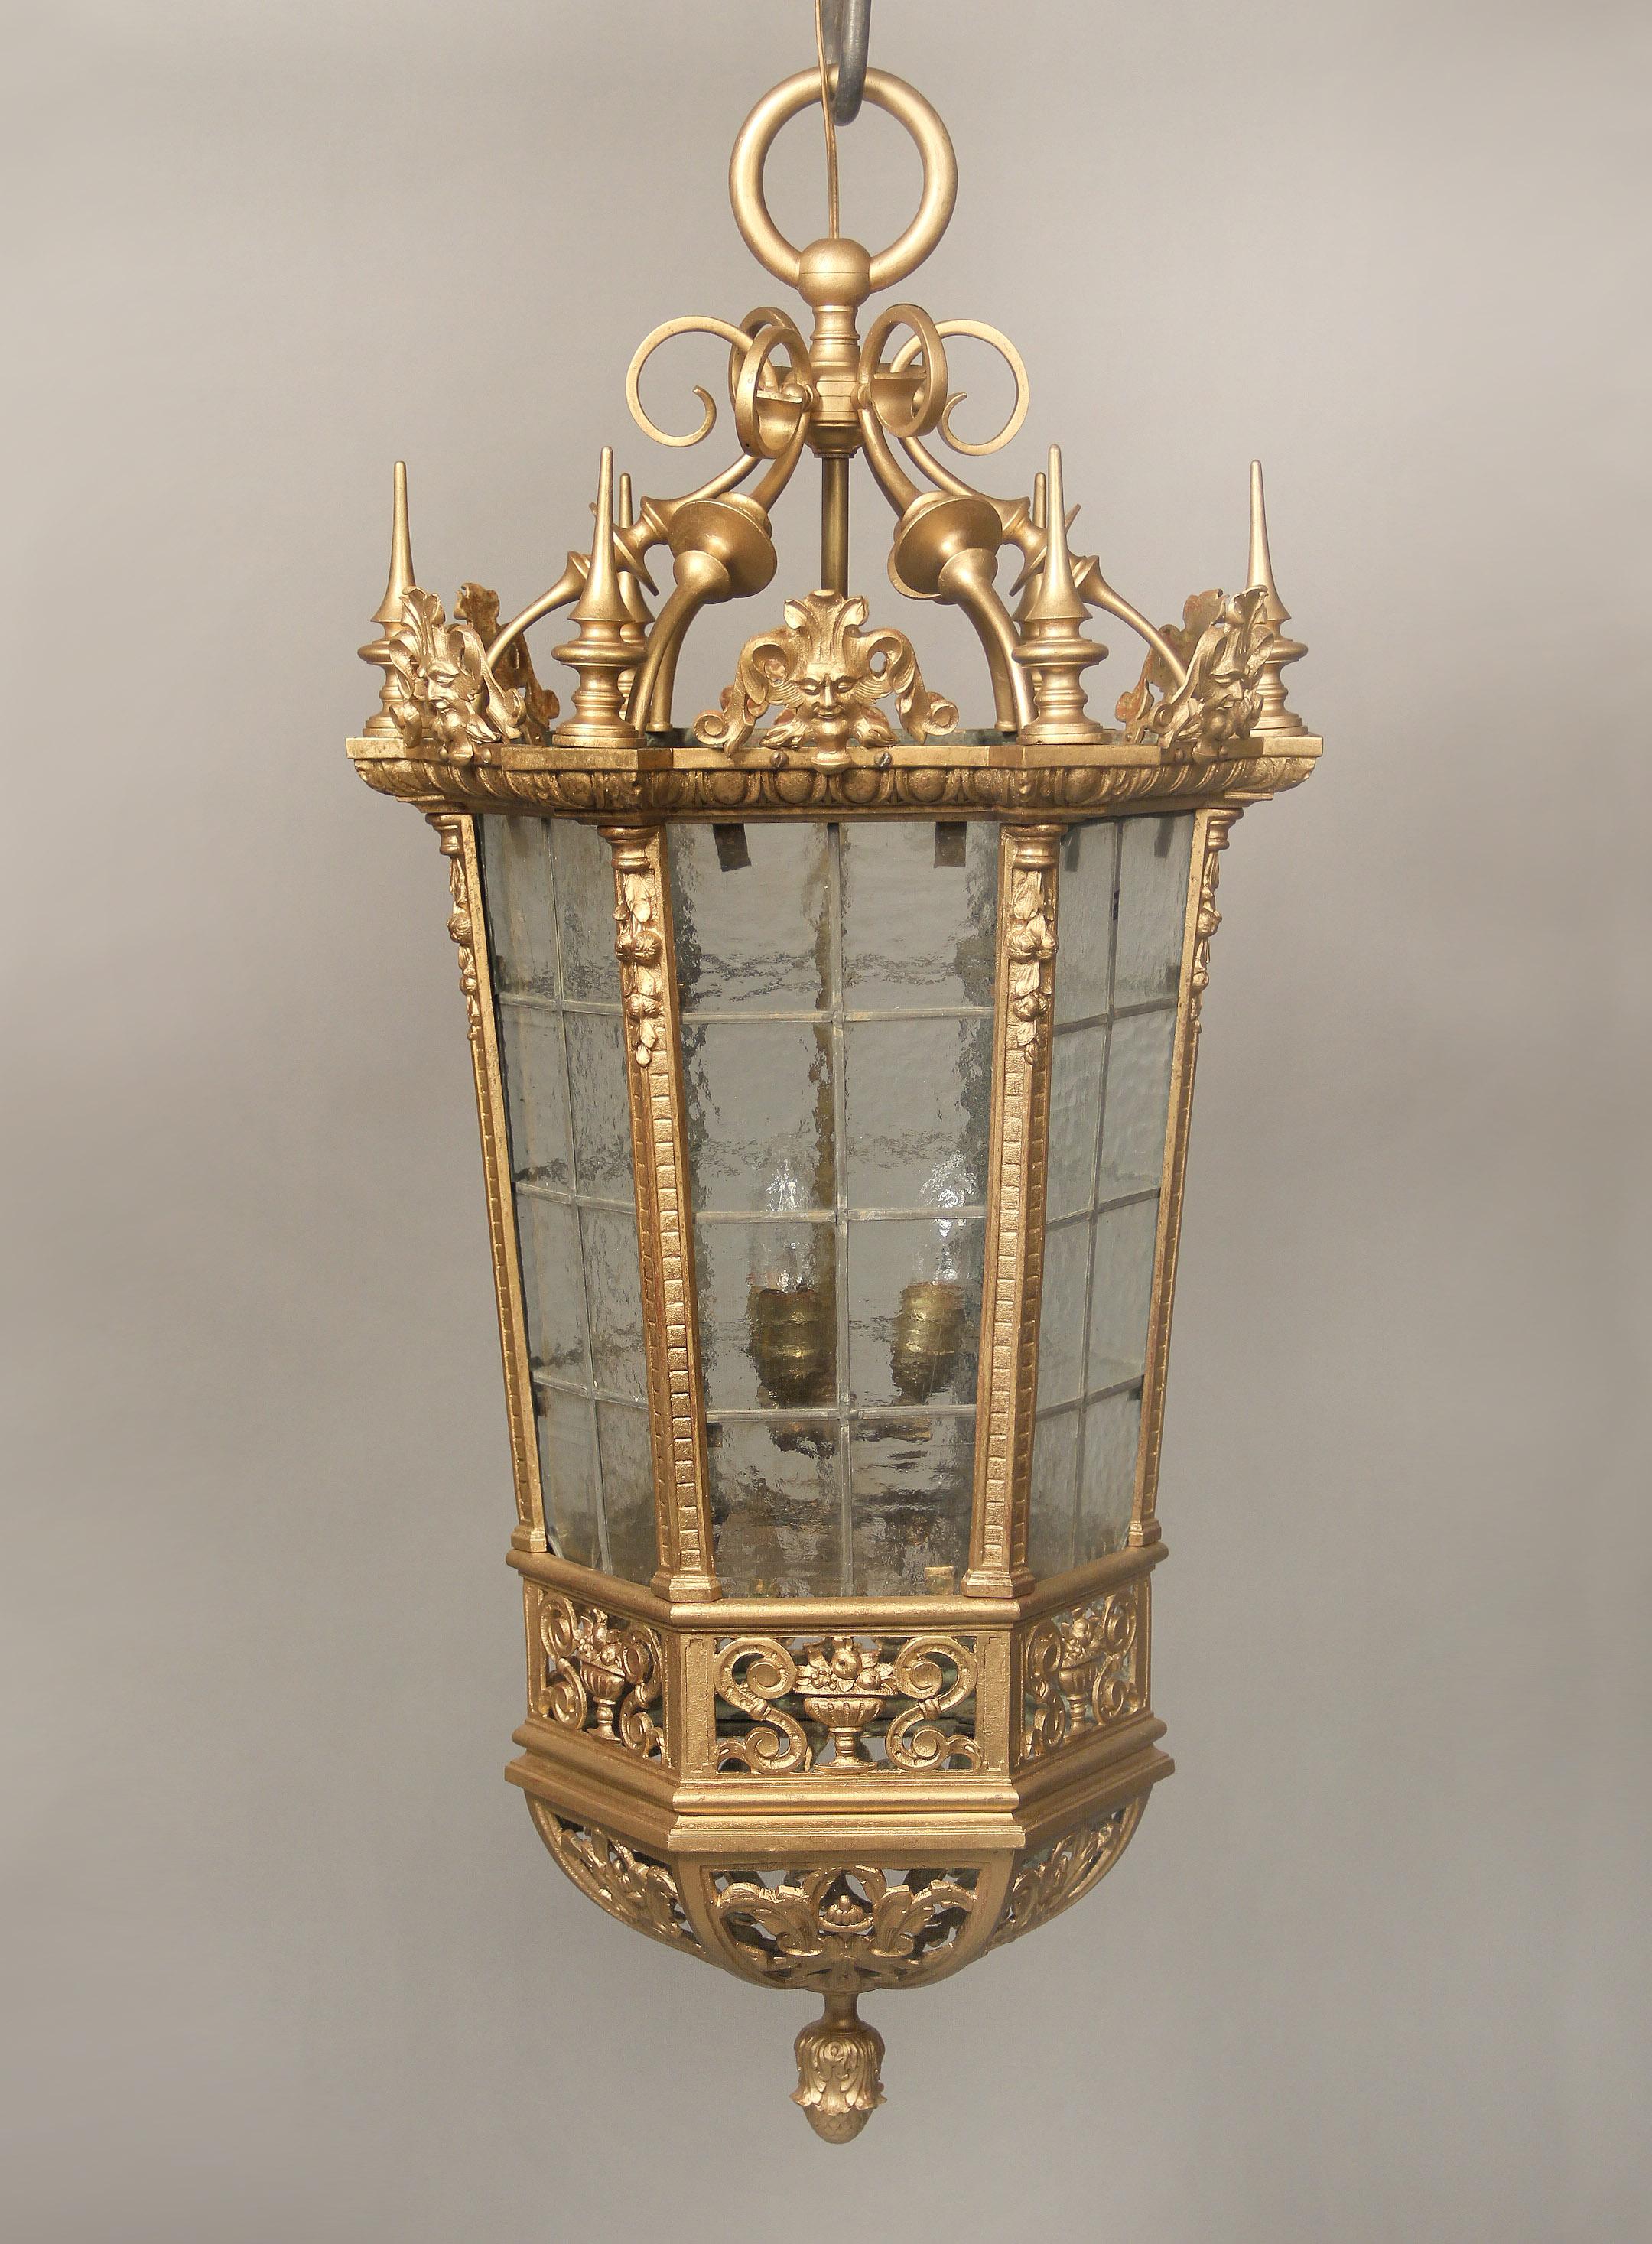 Eine interessante gotische Laterne aus dem späten 19. Jahrhundert aus vergoldeter Bronze und geriffeltem Glas.

Der Bronzeaufsatz mit sechs männlichen Masken mit spitzen Speeren an jeder Ecke, darüber ein sechseckiger Korpus mit Blumen- und